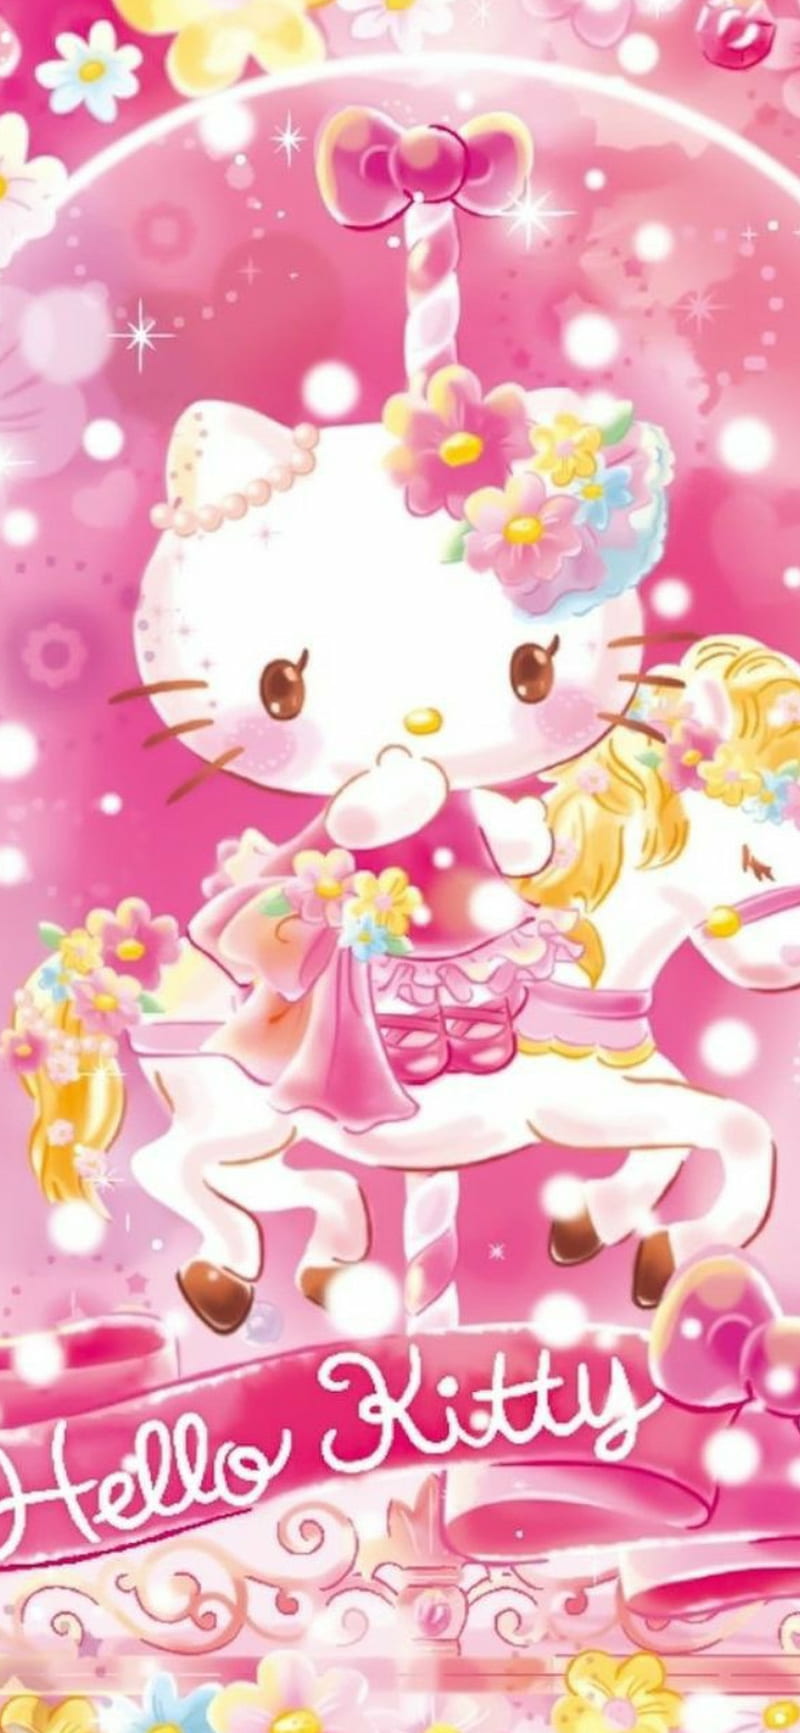 Hello Kitty: Hãy đón xem hình ảnh dễ thương về Hello Kitty, nhân vật đáng yêu nổi tiếng trên toàn thế giới. Sắp đến dịp Giáng sinh rồi, và Hello Kitty cũng không phải là ngoại lệ. Đừng bỏ lỡ cơ hội thưởng thức những hình ảnh đáng yêu này nhé!